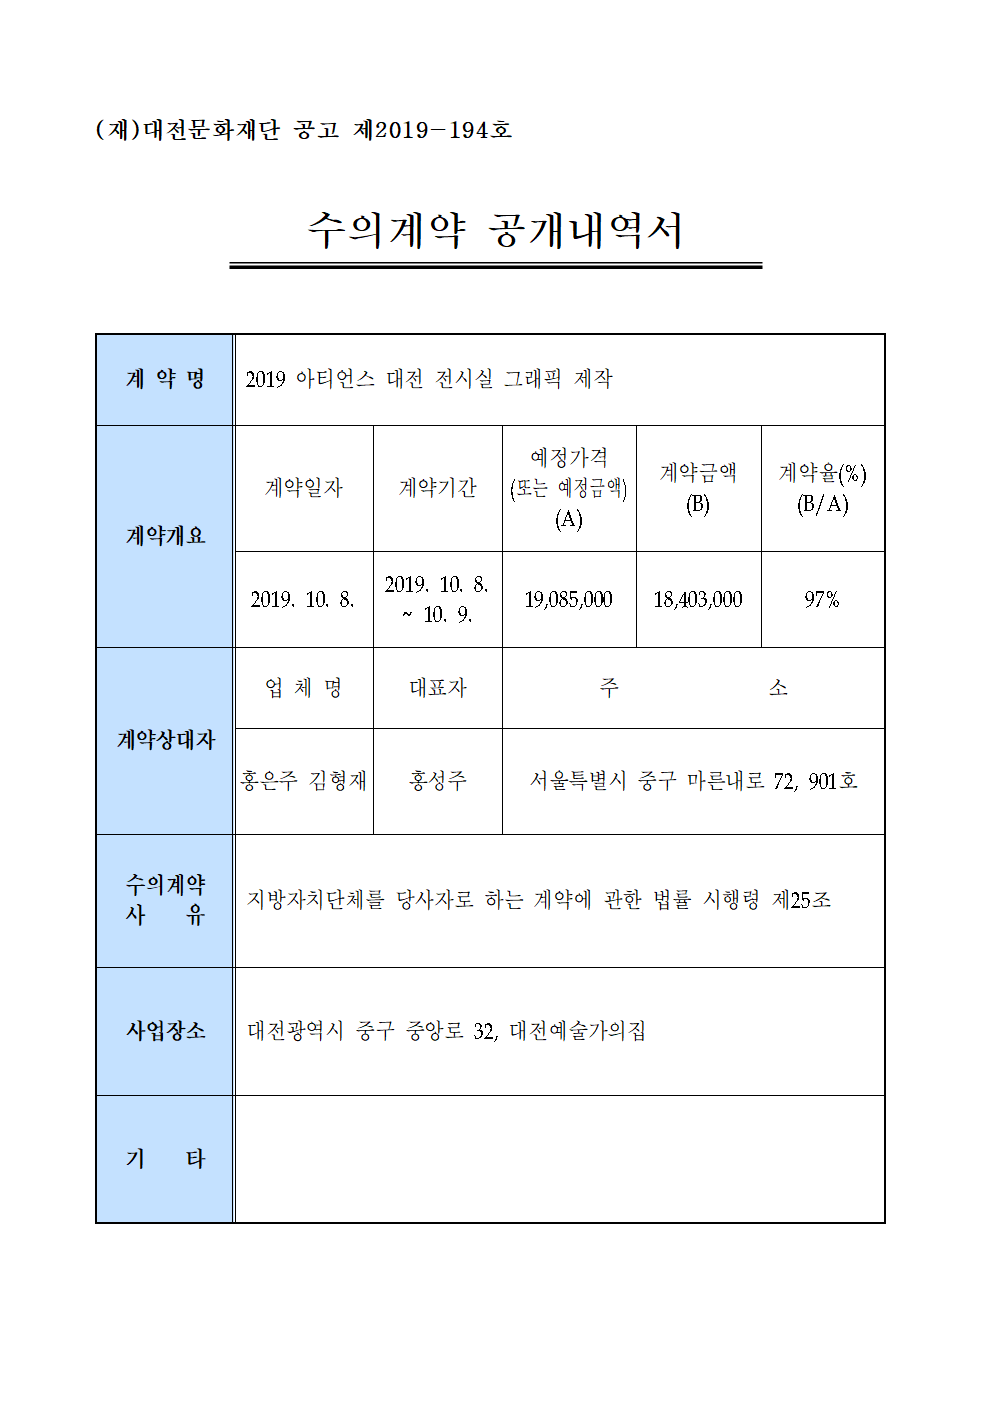 2019 아티언스 대전 전시실 그래픽 제작 용역 수의계약 내역 공개